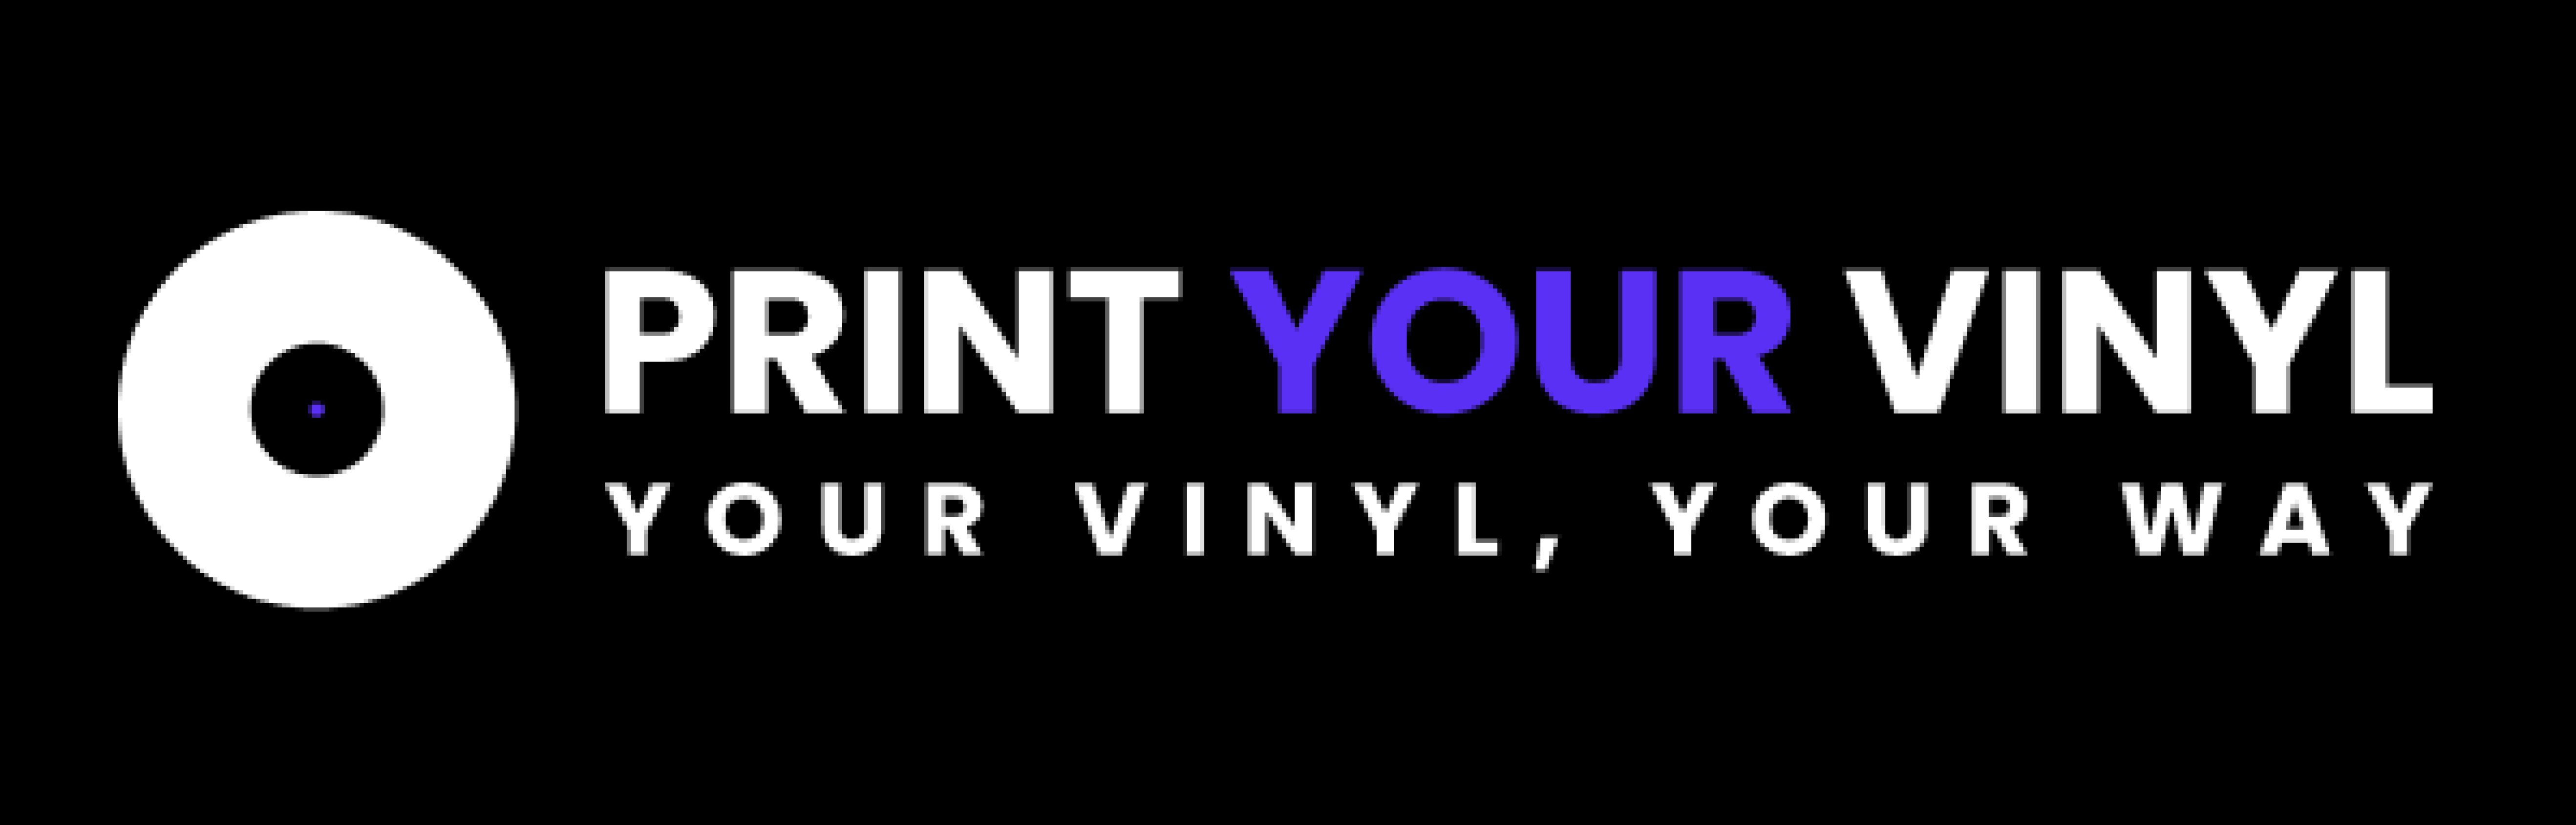 Custom Vinyl Records: Create your own vinyl record